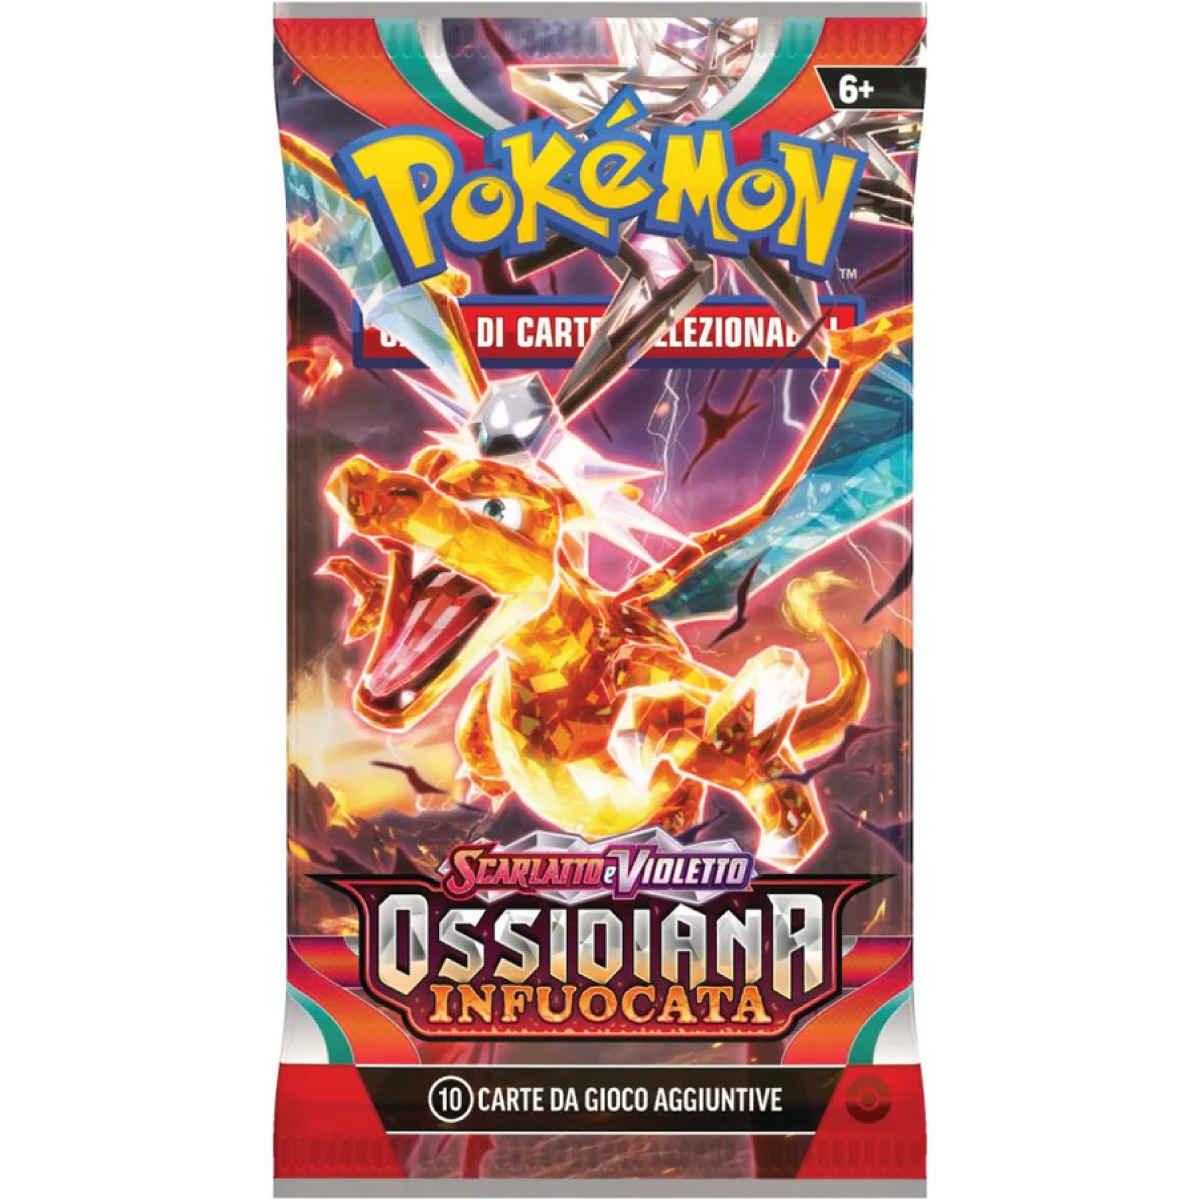 pokemon gcc - pokemon scarlatto e violetto ossidiana infuocata - box 36 bustine (ita)  - pk61340